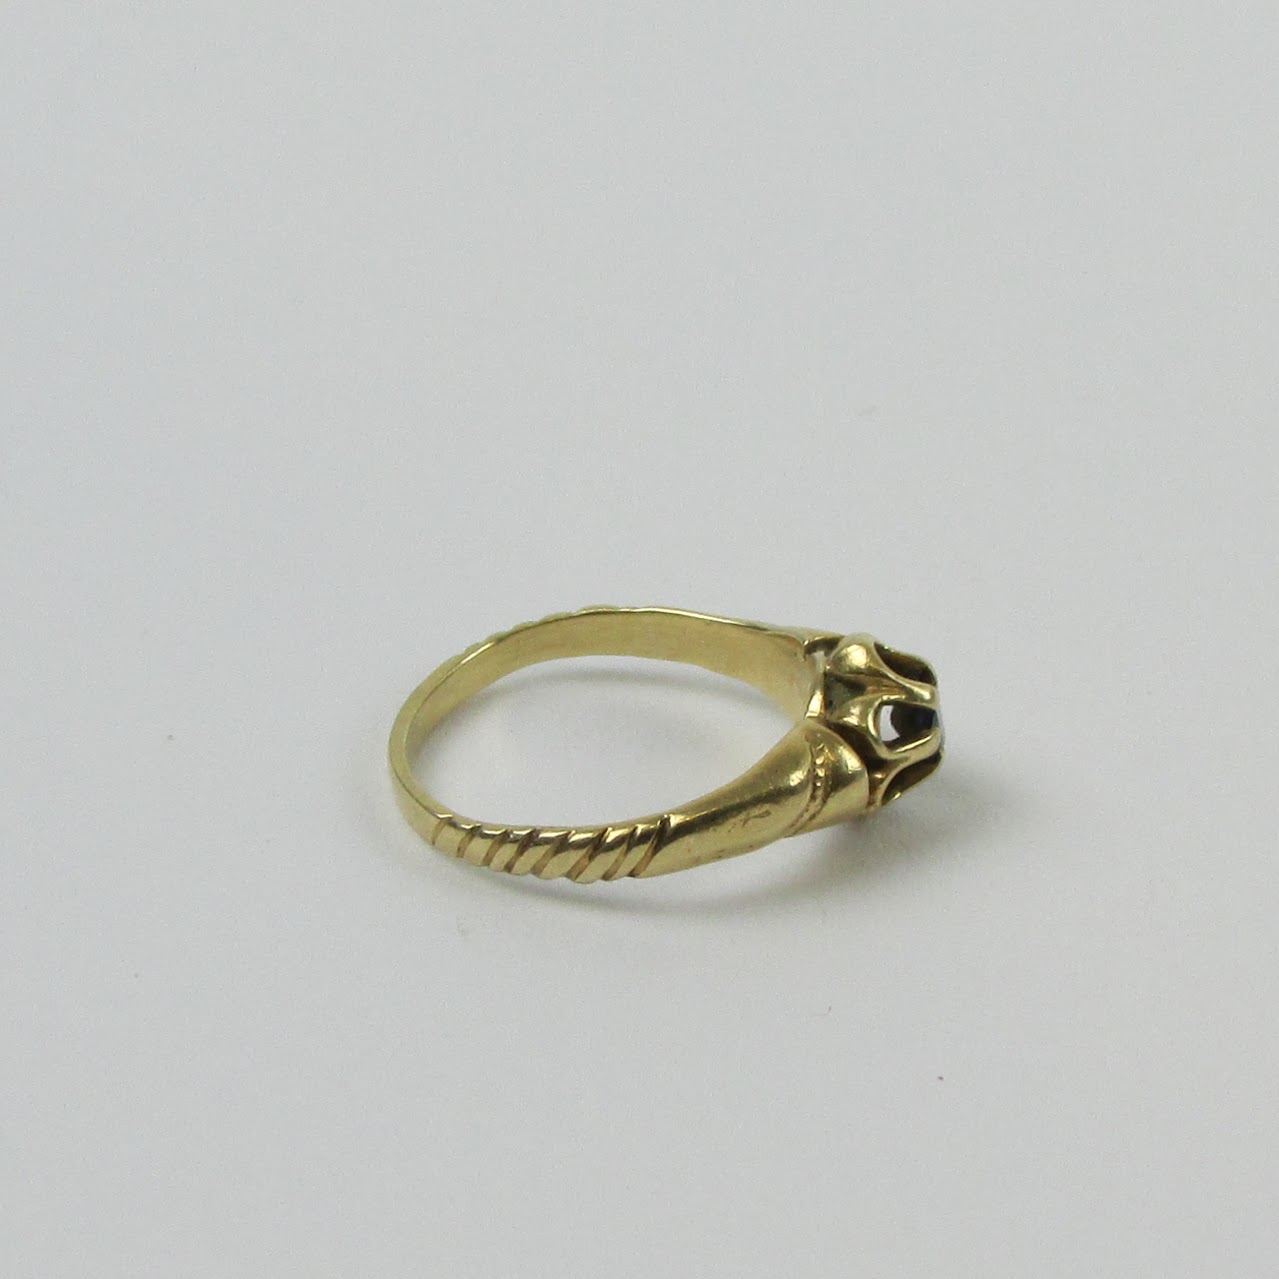 14K Gold Onyx Child's Ring